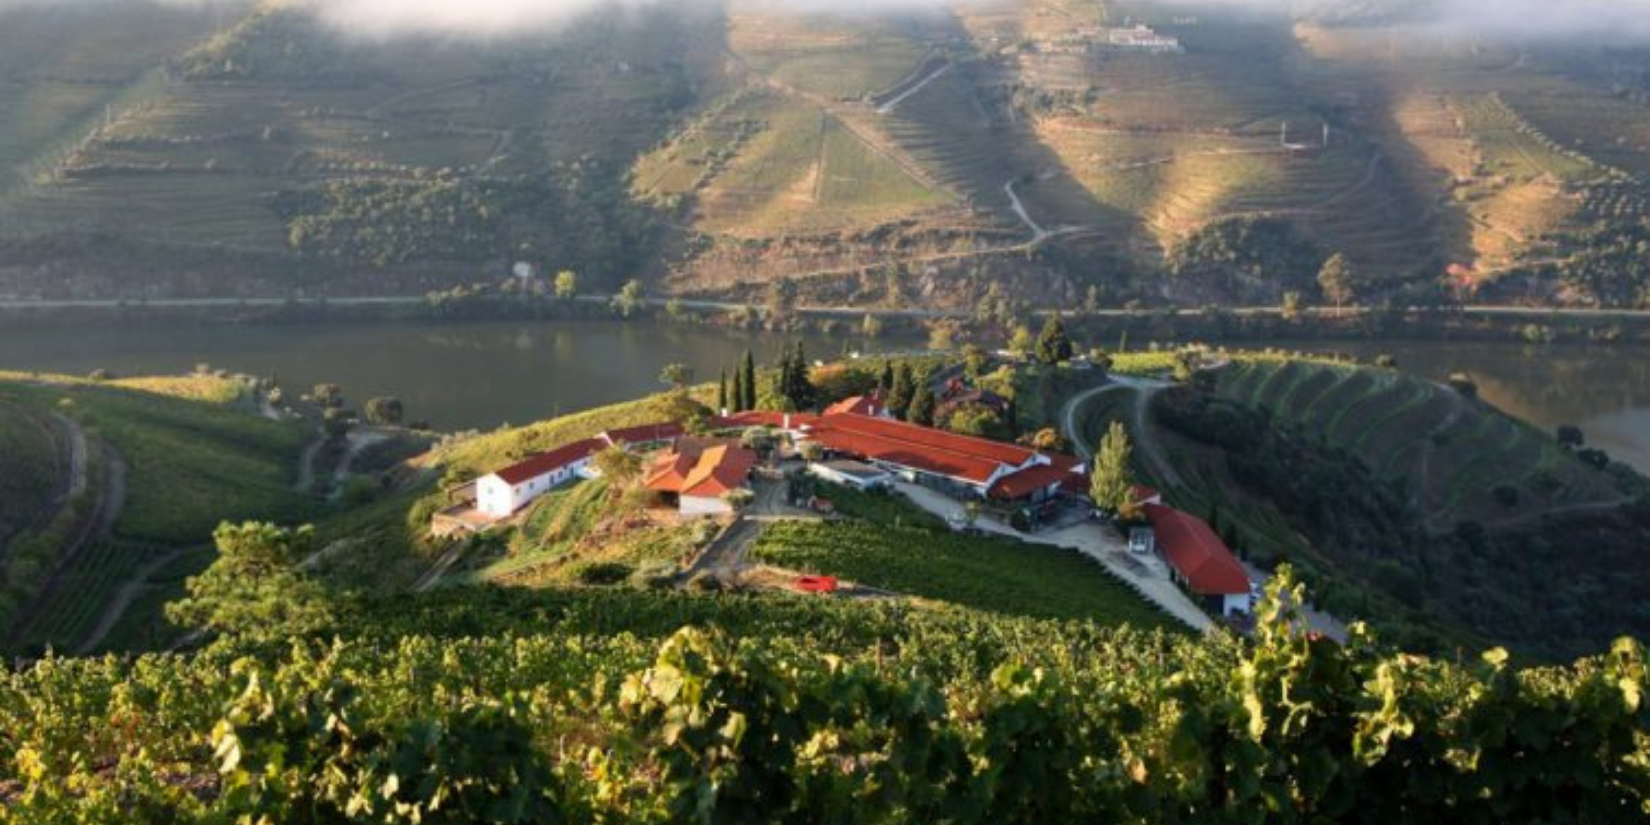 Quinta Nova de Nossa Senhora do Carmo - Premium Wine Tourism in the Douro Valley